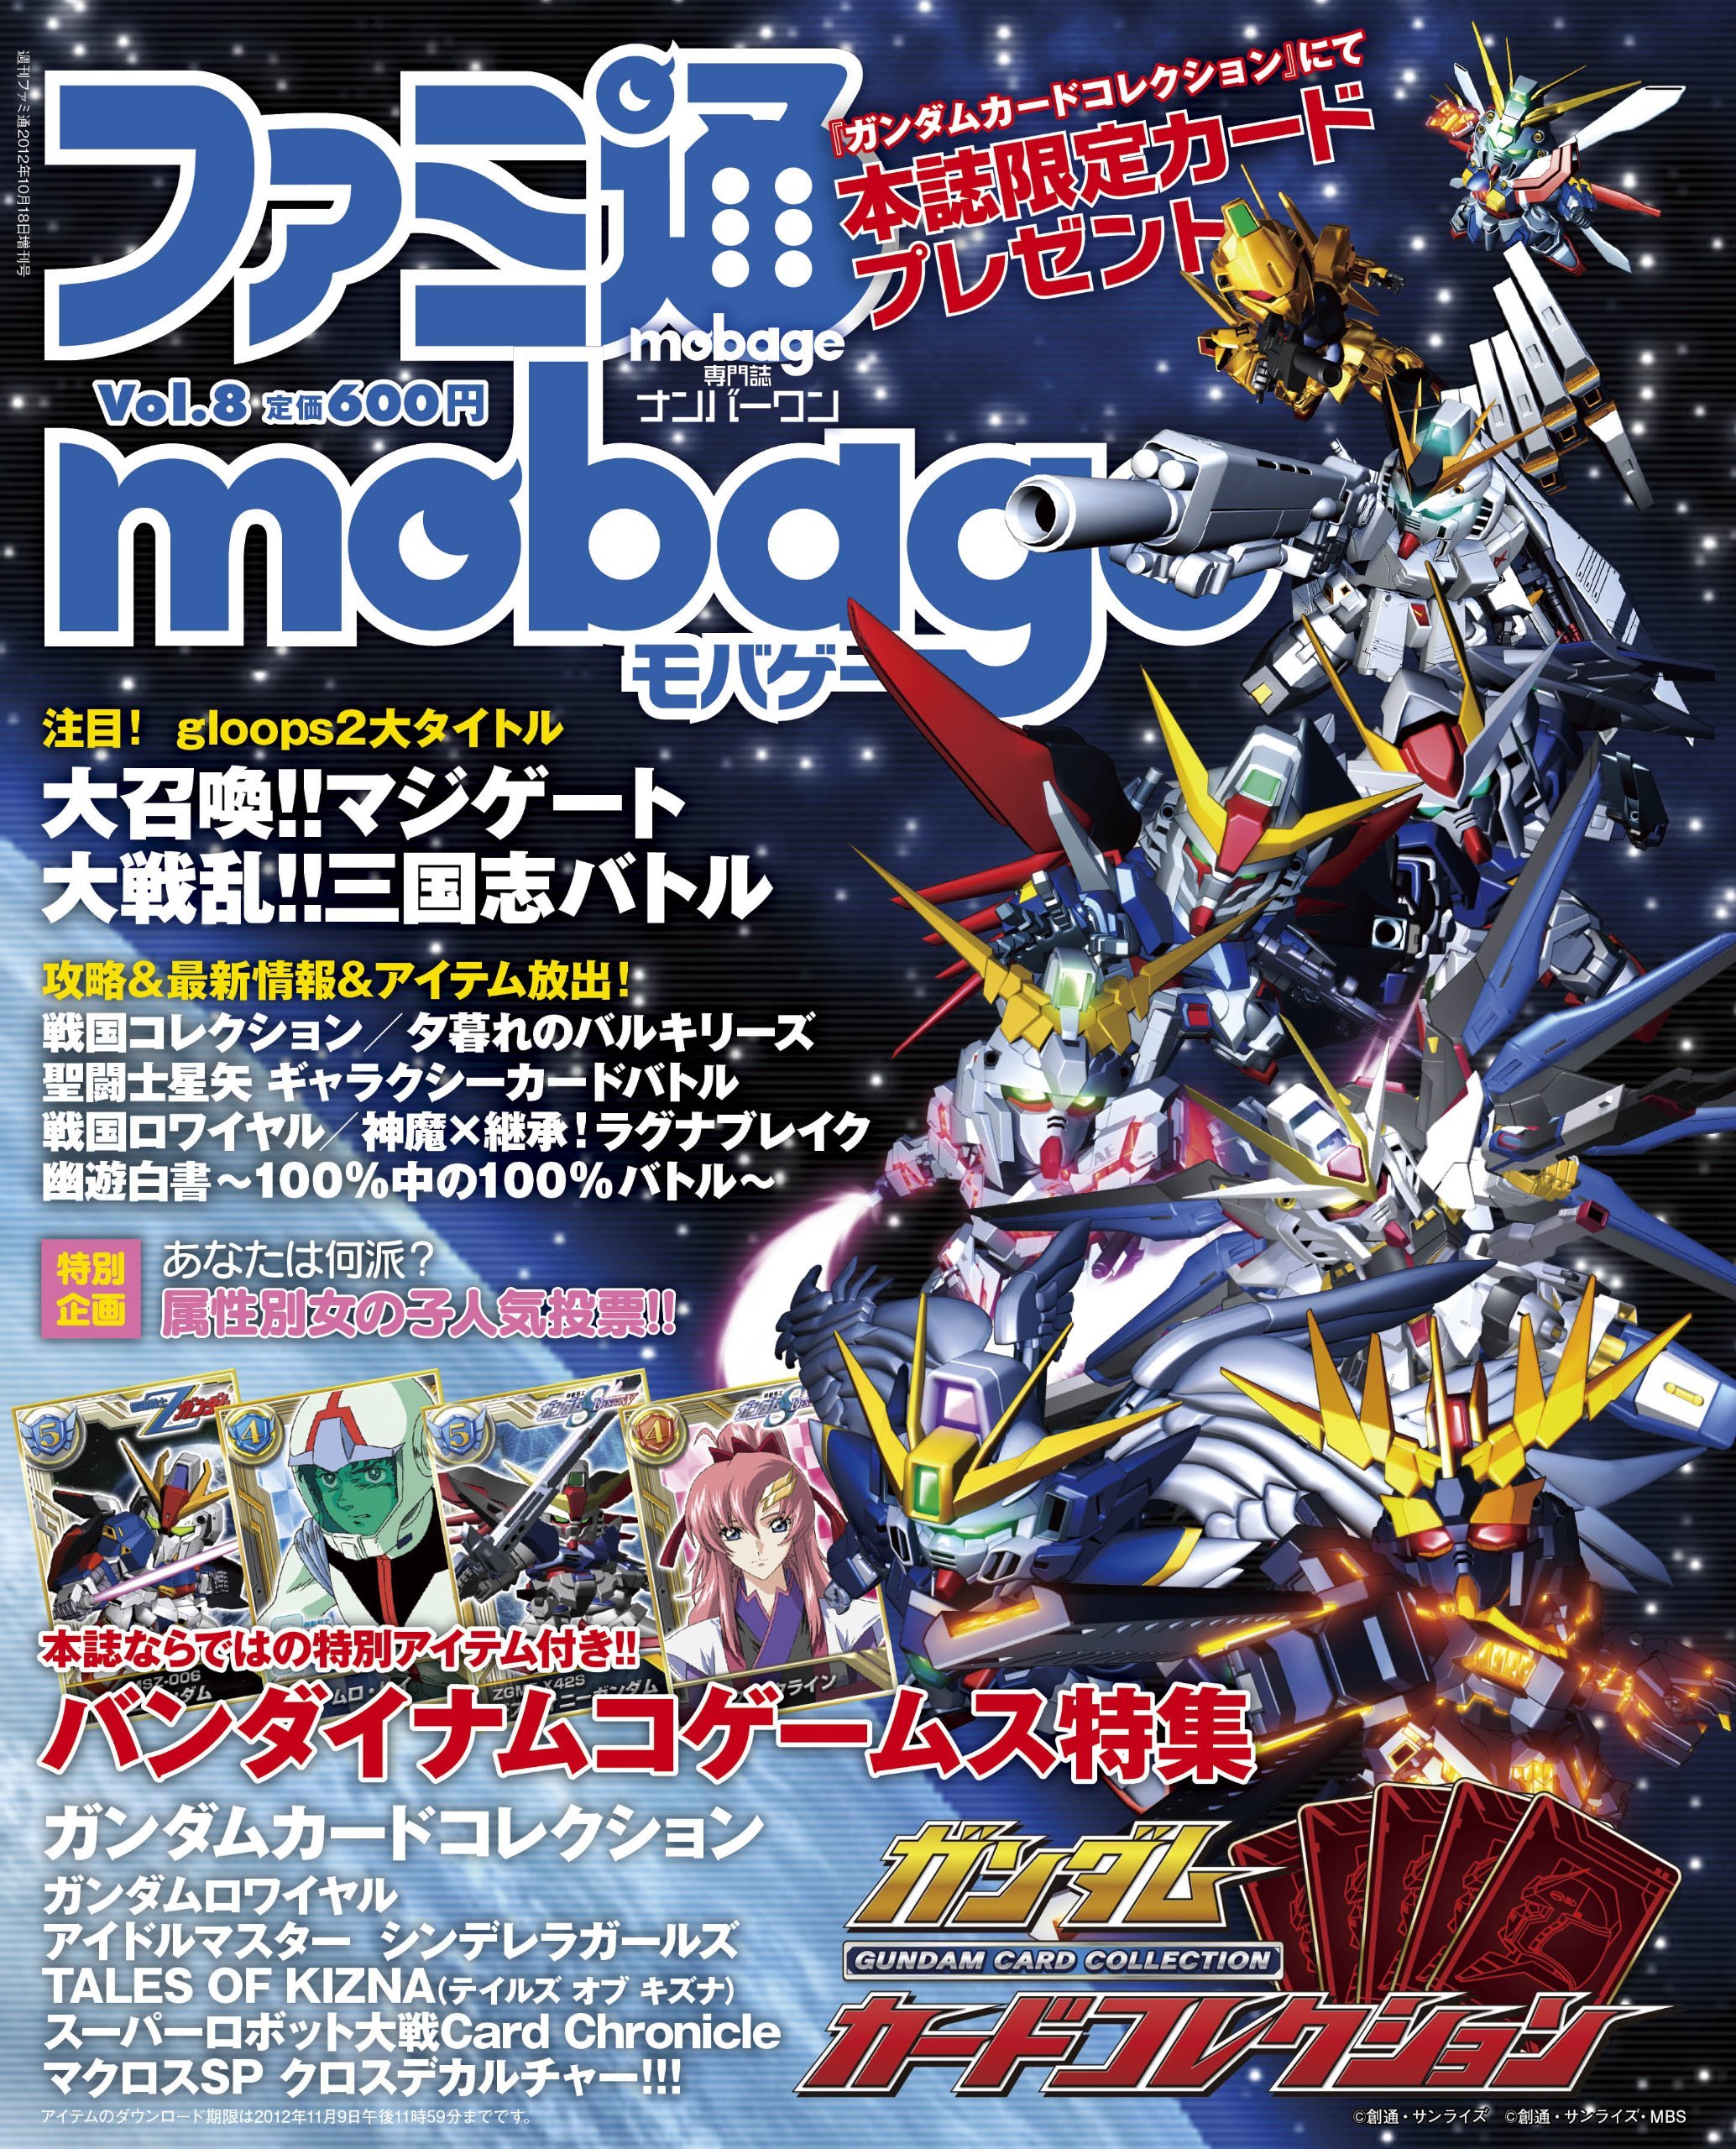 Famitsu Mobage Vol.08 October 18, 2012